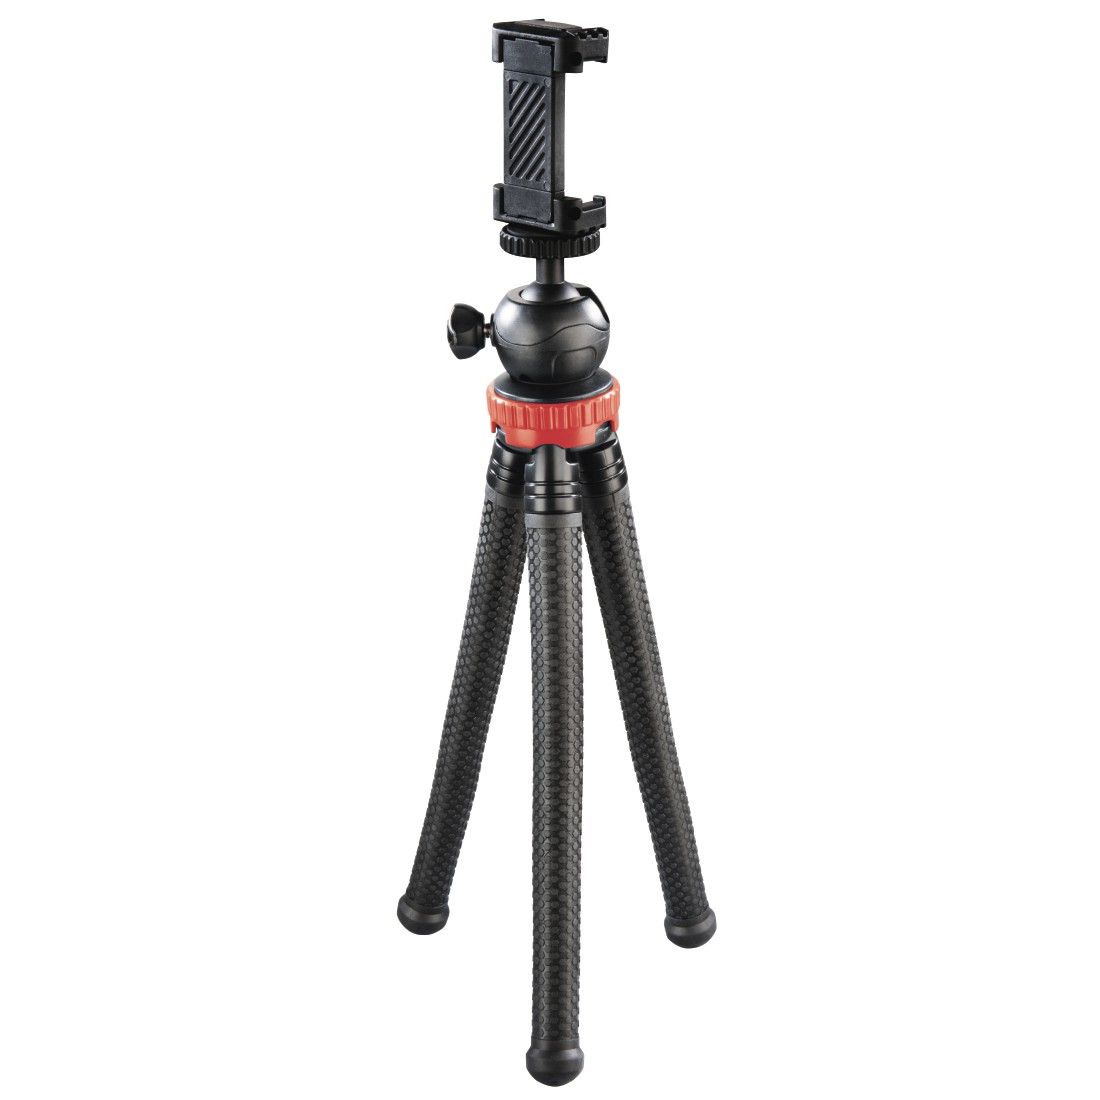 Hama Stativ FlexPro für Smartphone, GoPro und Fotokameras, 27 cm, Rot